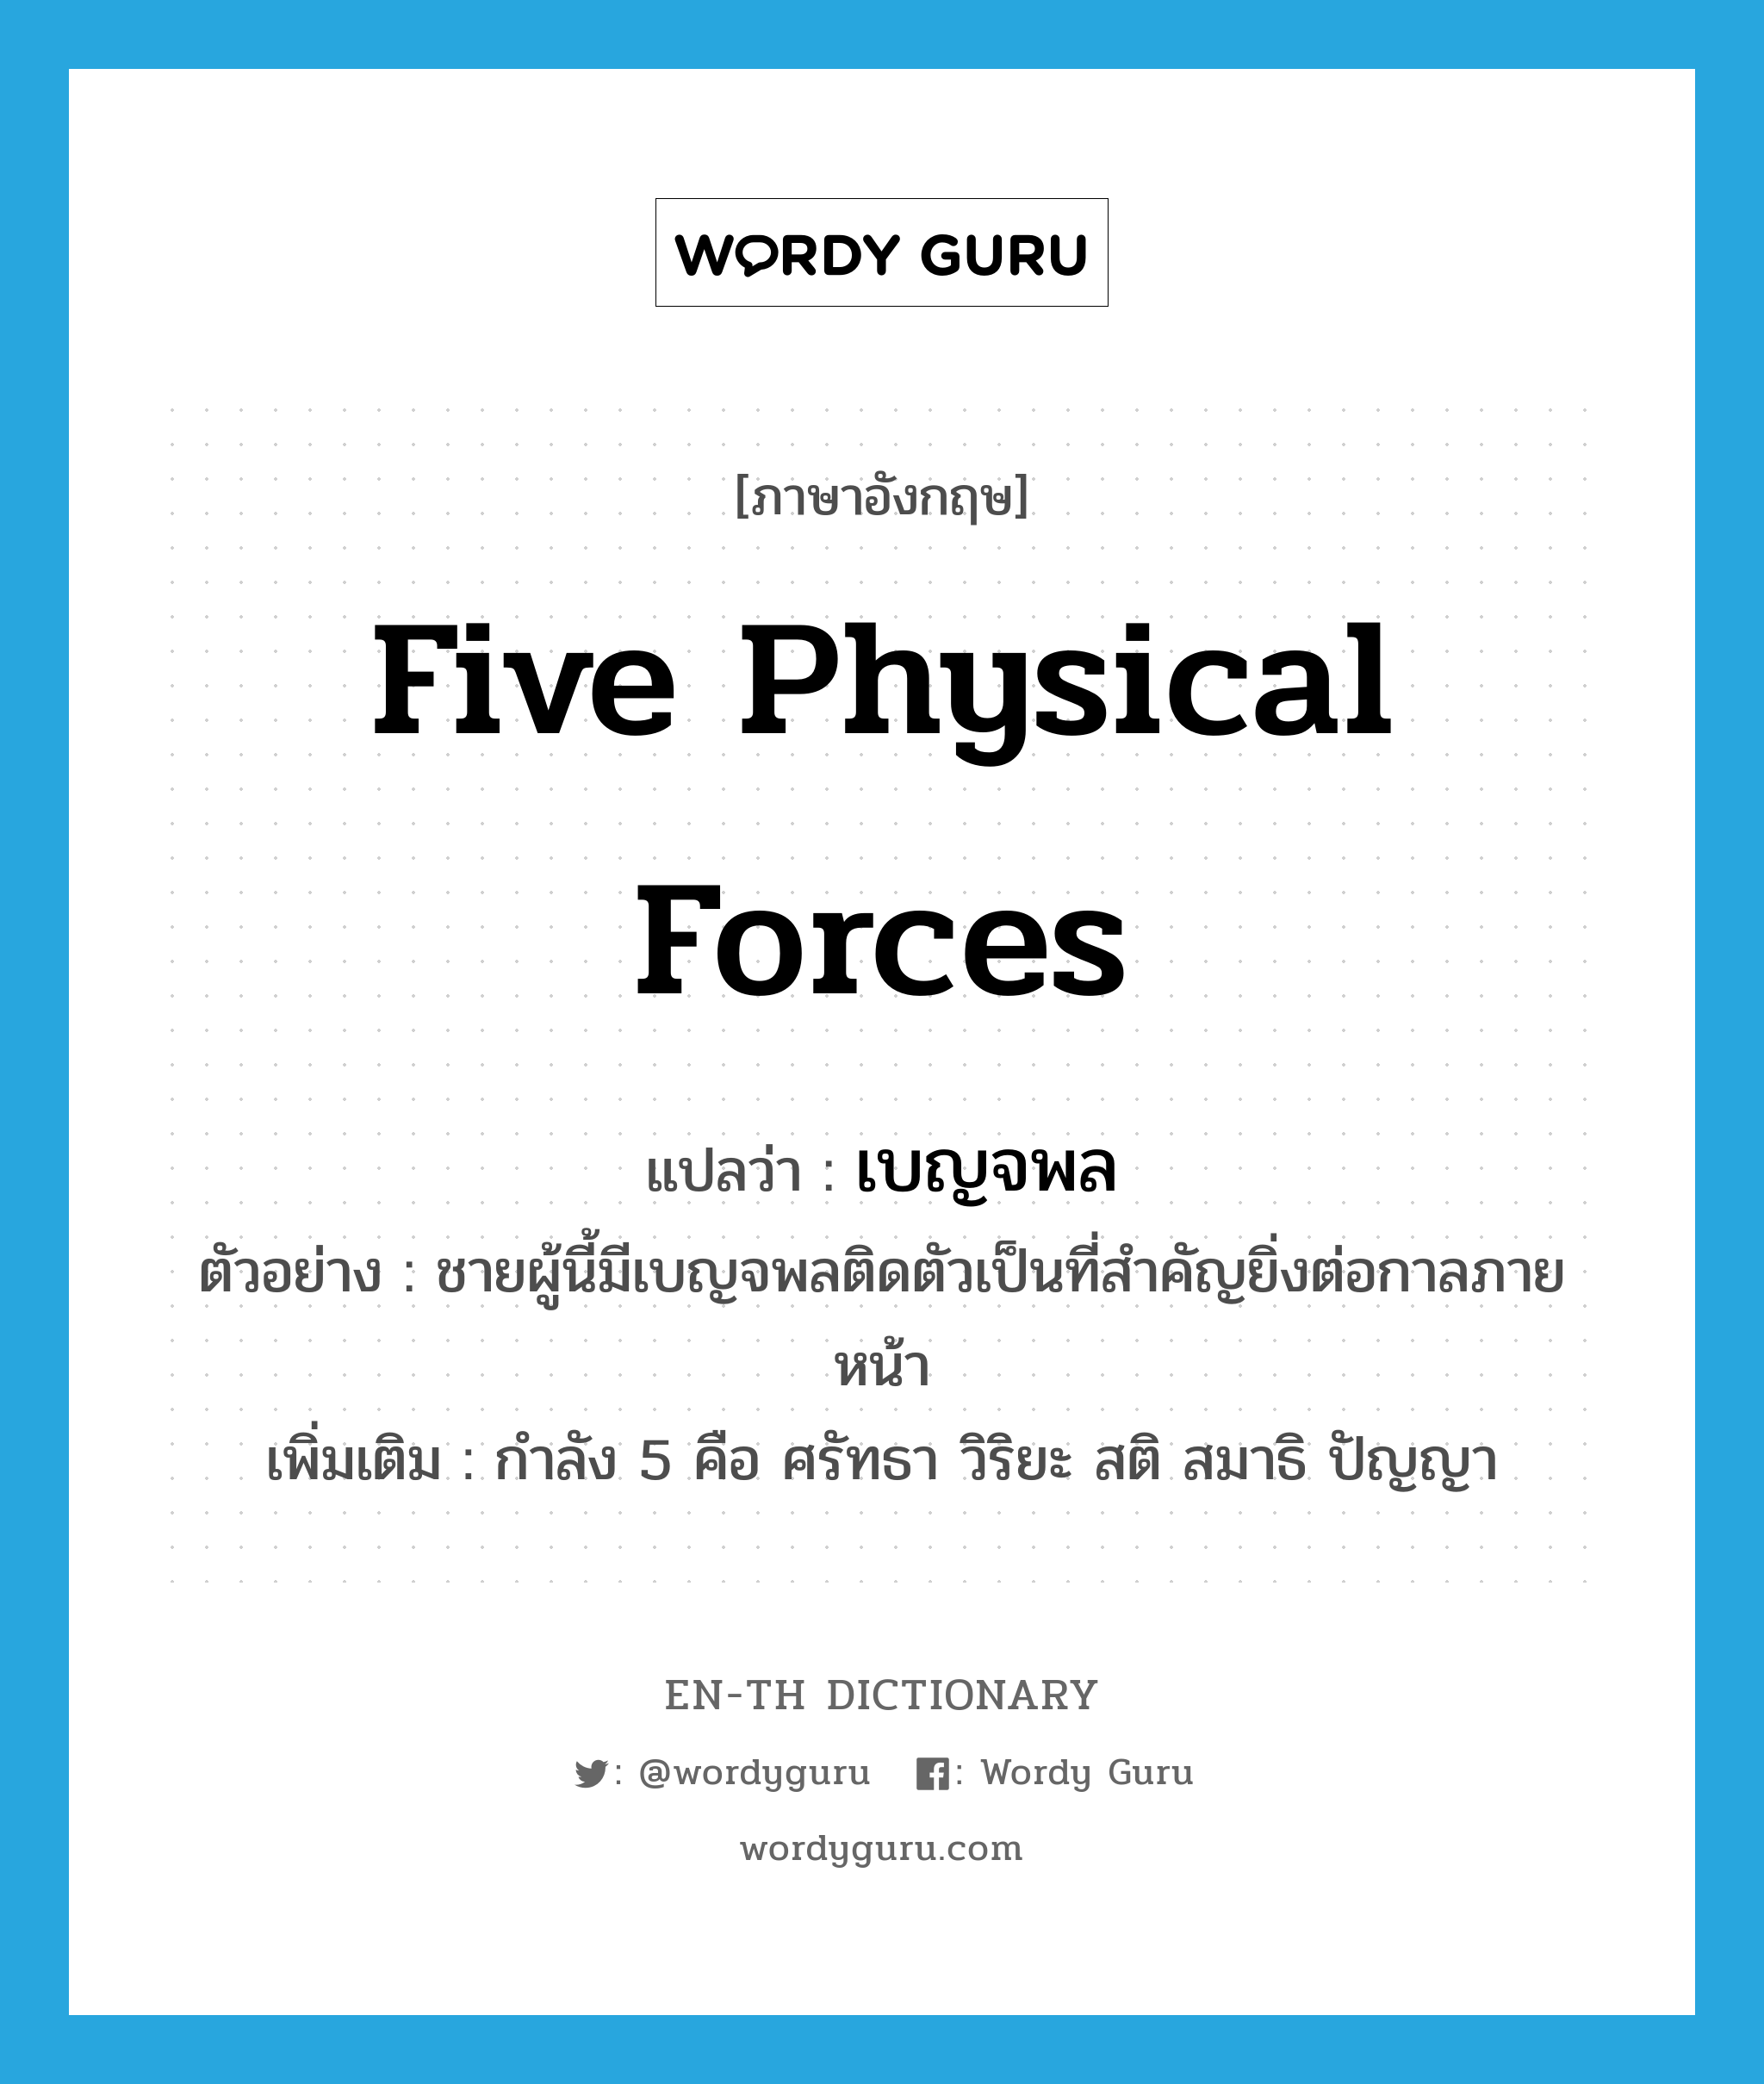 five physical forces แปลว่า?, คำศัพท์ภาษาอังกฤษ five physical forces แปลว่า เบญจพล ประเภท N ตัวอย่าง ชายผู้นี้มีเบญจพลติดตัวเป็นที่สำคัญยิ่งต่อกาลภายหน้า เพิ่มเติม กำลัง 5 คือ ศรัทธา วิริยะ สติ สมาธิ ปัญญา หมวด N